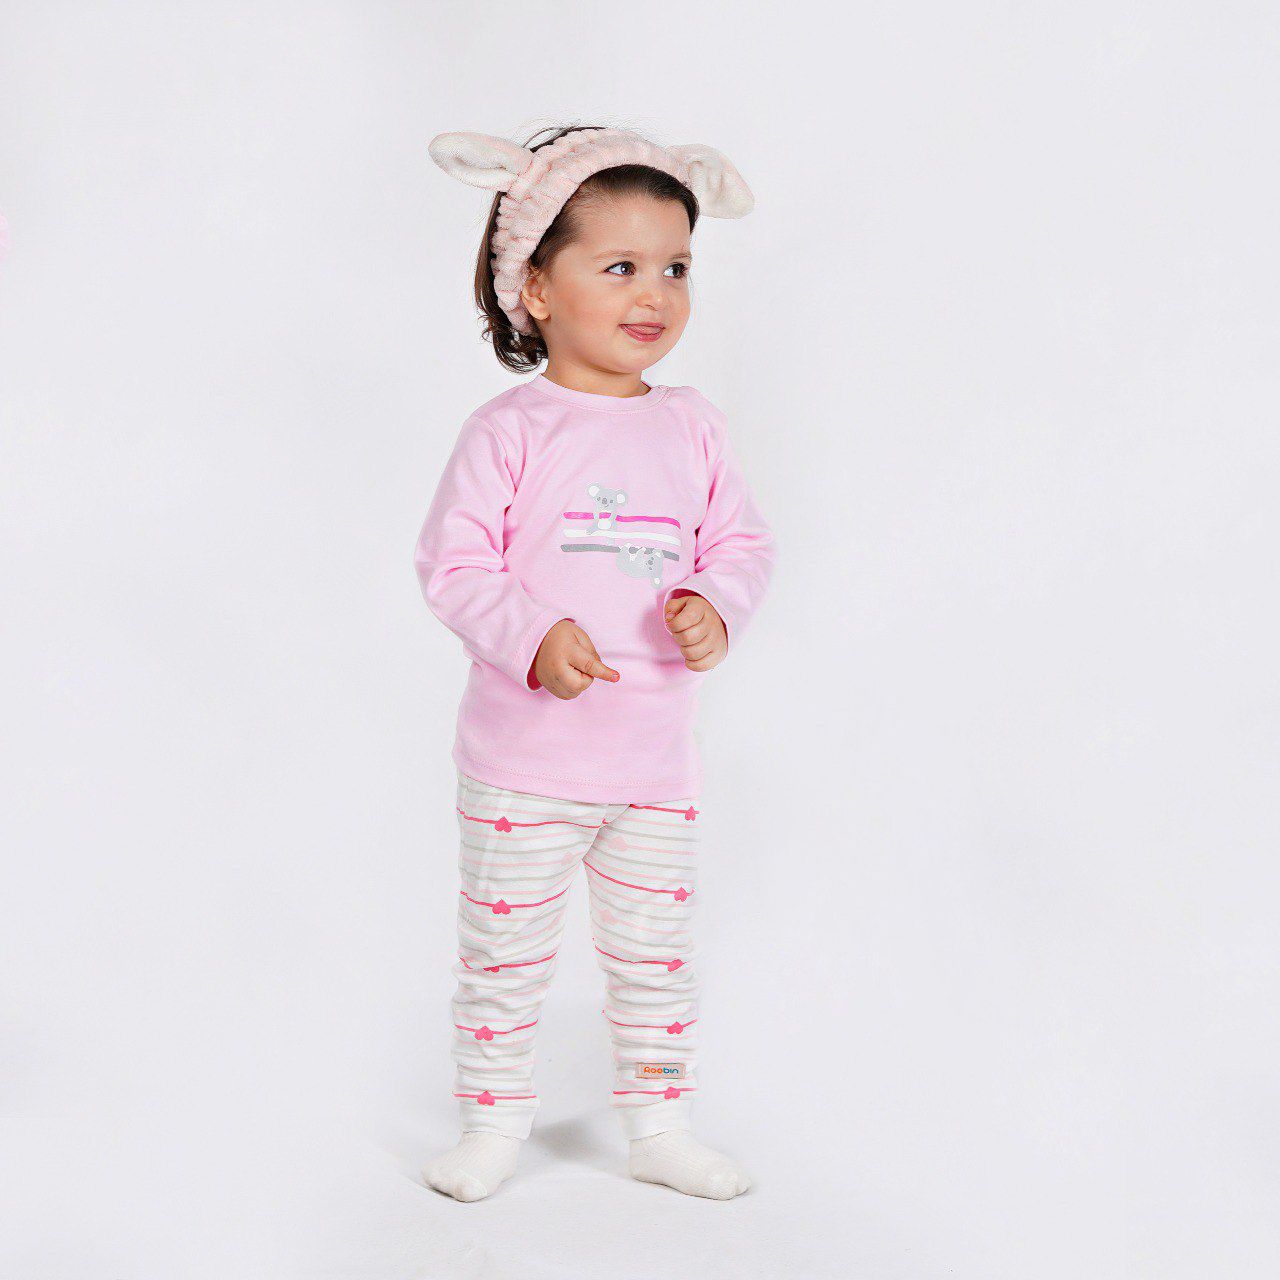 ست تی شرت و شلوار نوزادی روبین مدل کوالا رنگ صورتی -  - 5